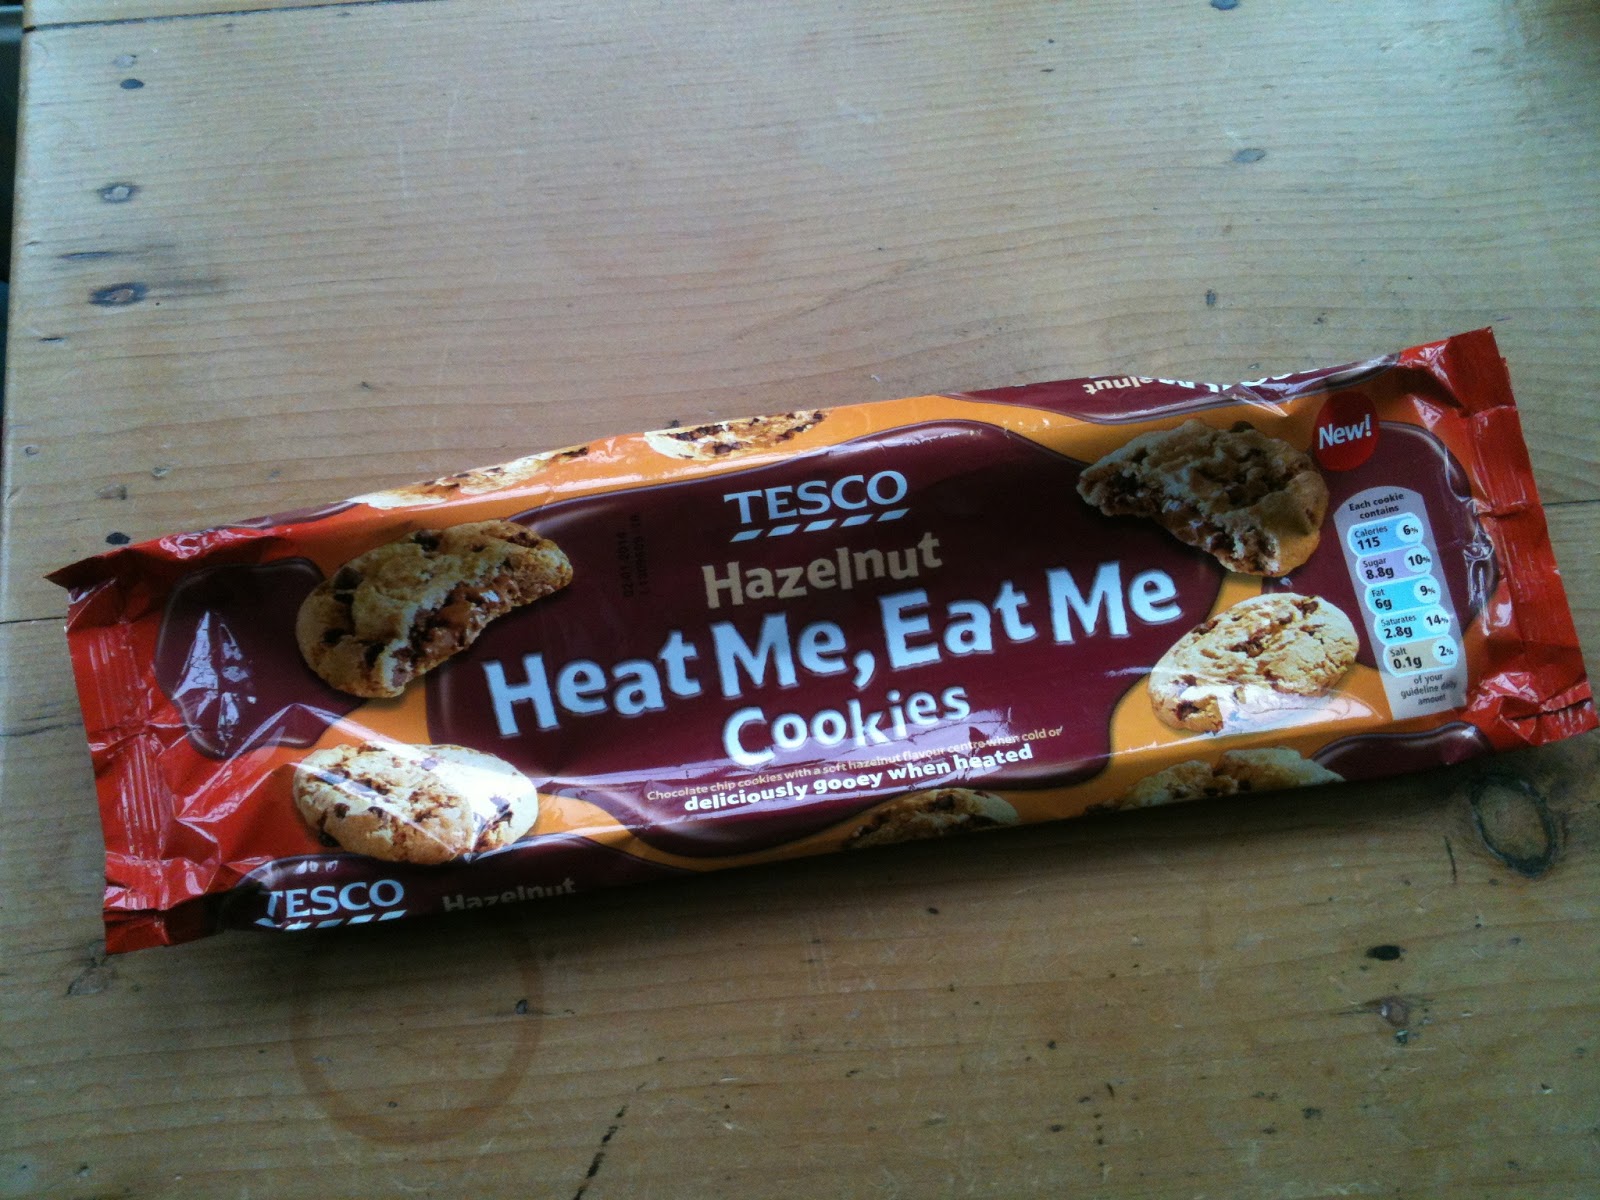 biscuitpoetry: Heat Me, Eat Me, CHEAT ME cookies